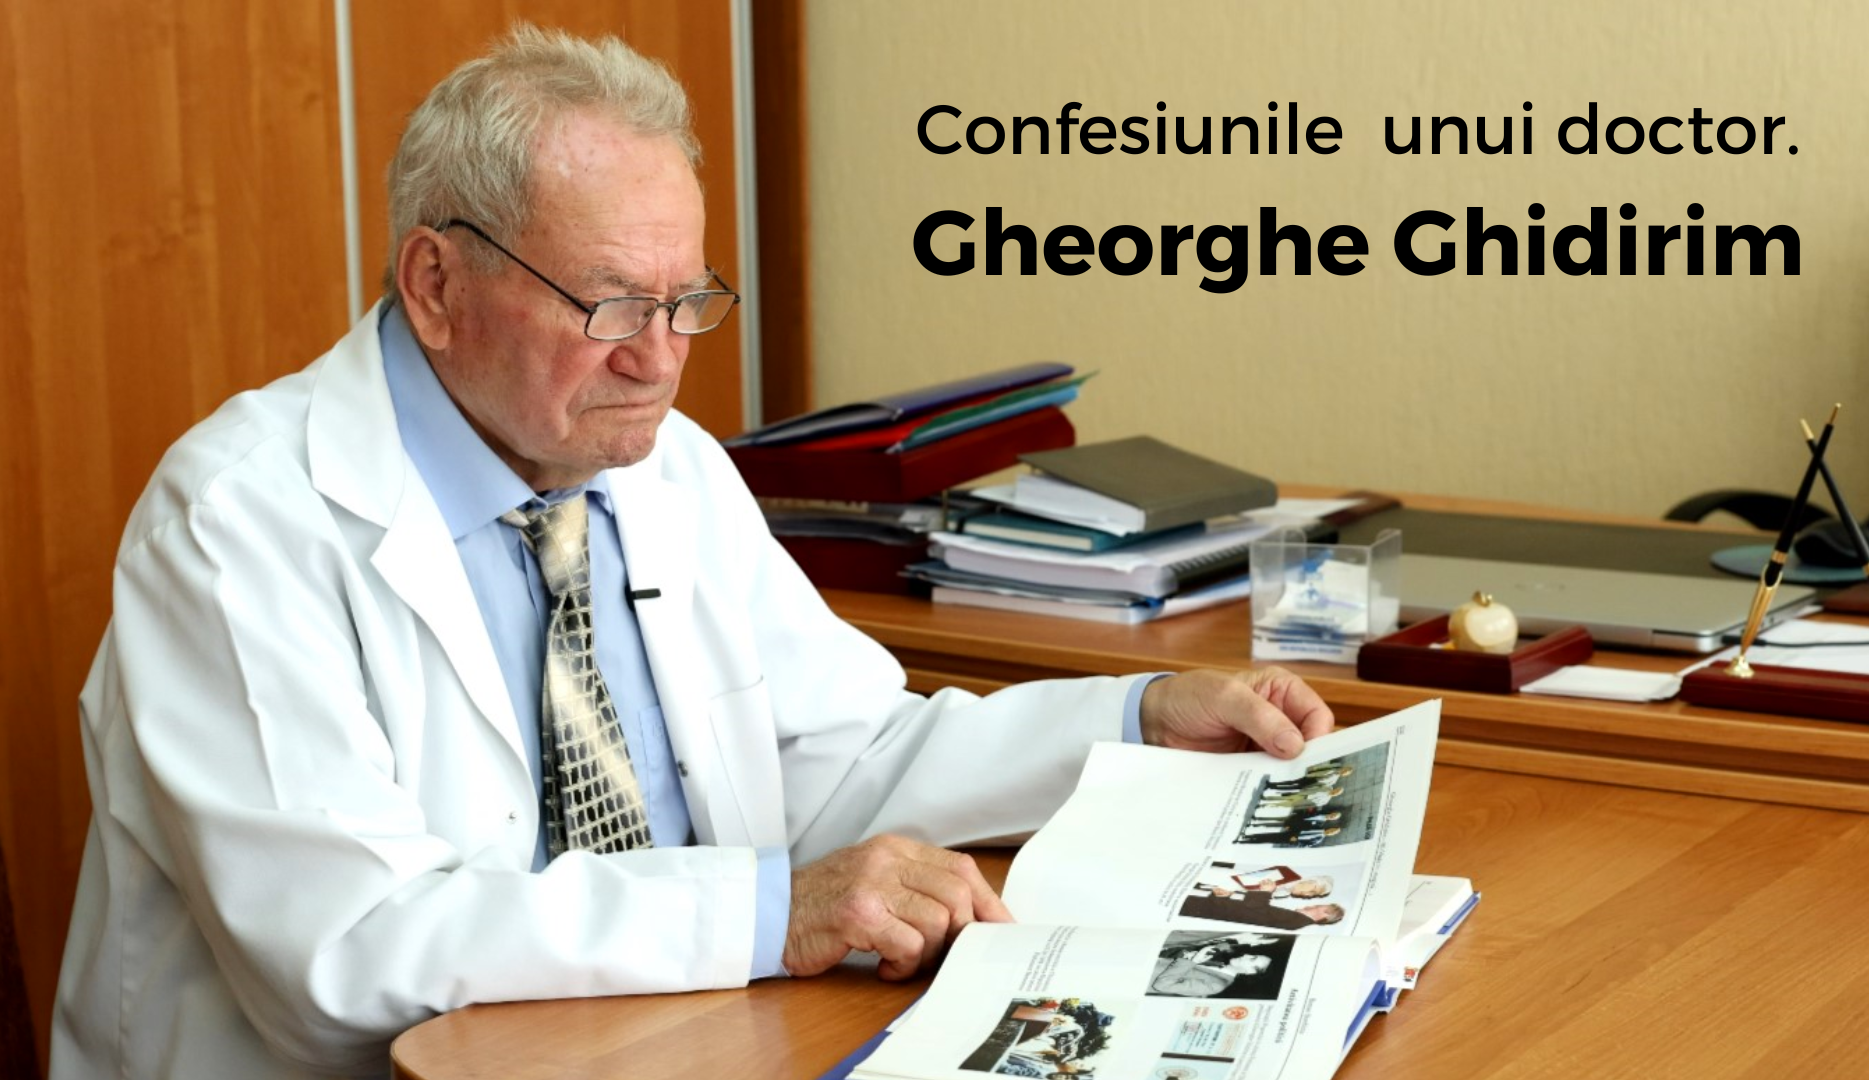 Profesorul Gheorghe Ghidirim: În medicină este nevoie de rezistență și dedicație. Nu toți au aceste calități